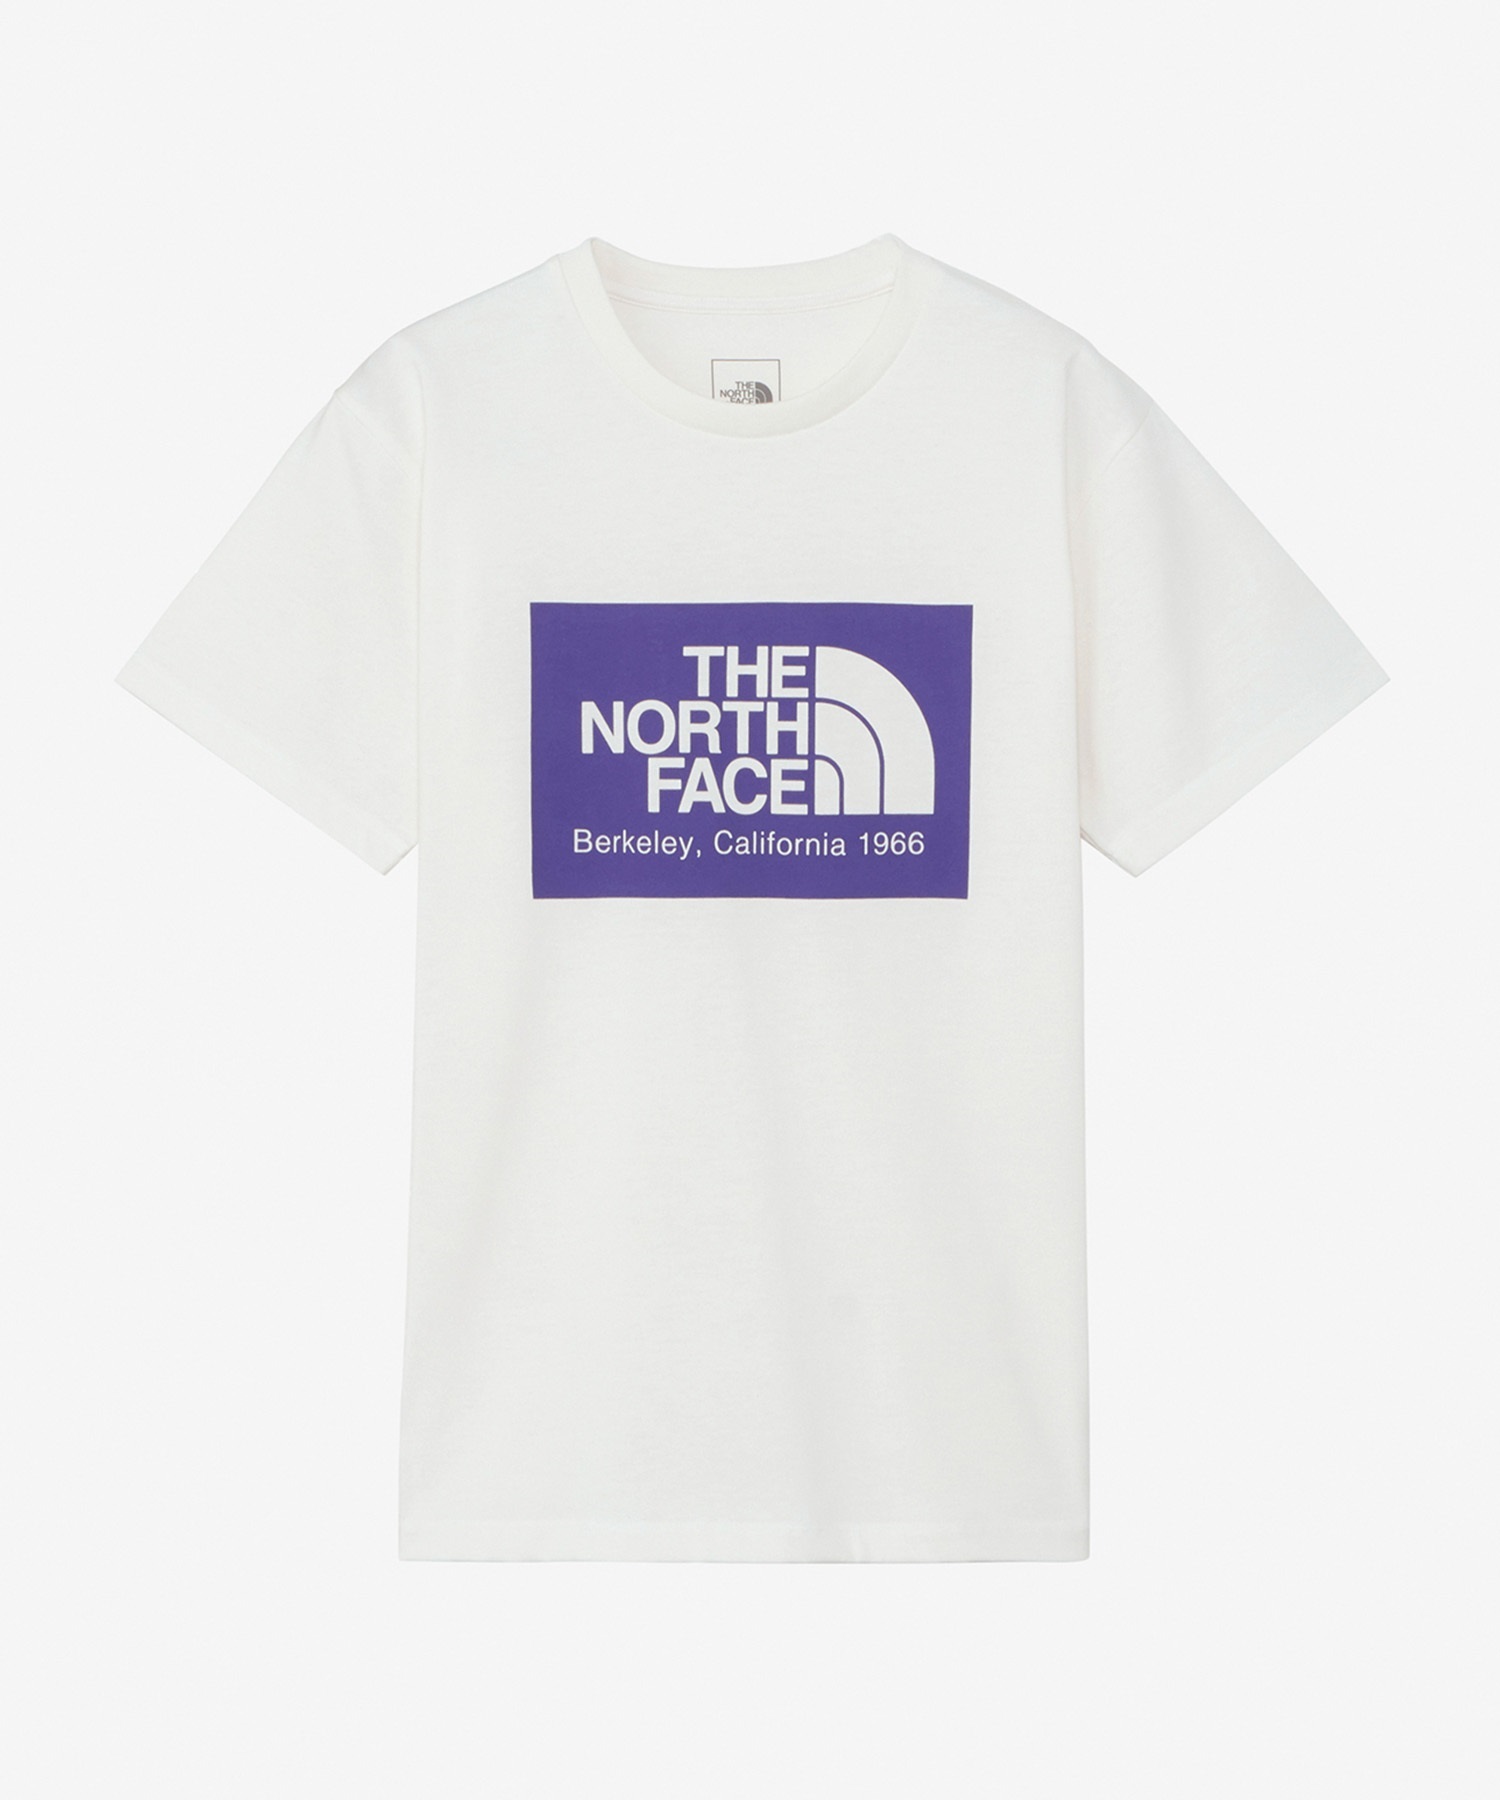 THE NORTH FACE ザ・ノース・フェイス レディース ショートスリーブカリフォルニアロゴティー 半袖 Tシャツ オフホワイト NTW32453 OW(OW-S)